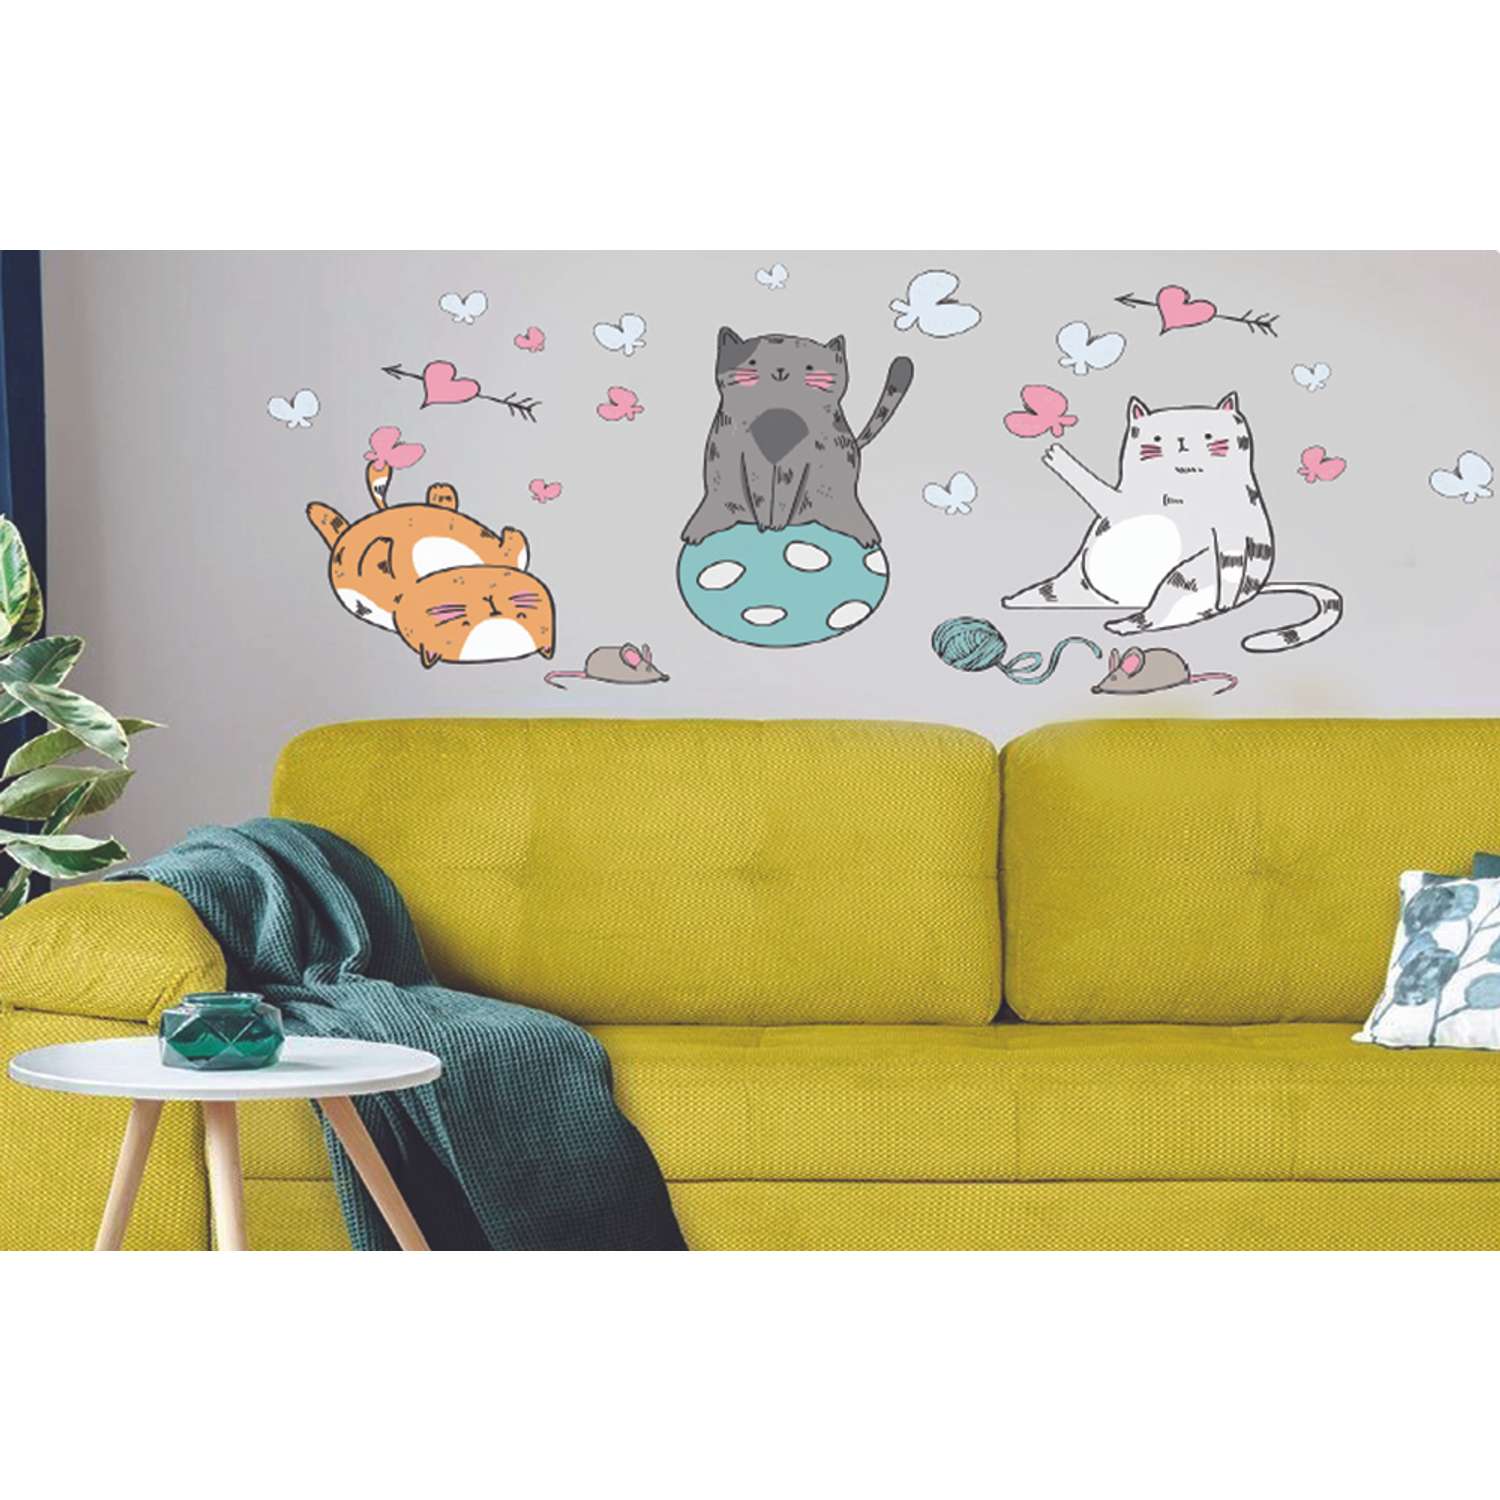 Наклейка оформительская ГК Горчаков на стену в детскую комнату с рисунком котики для декора - фото 6